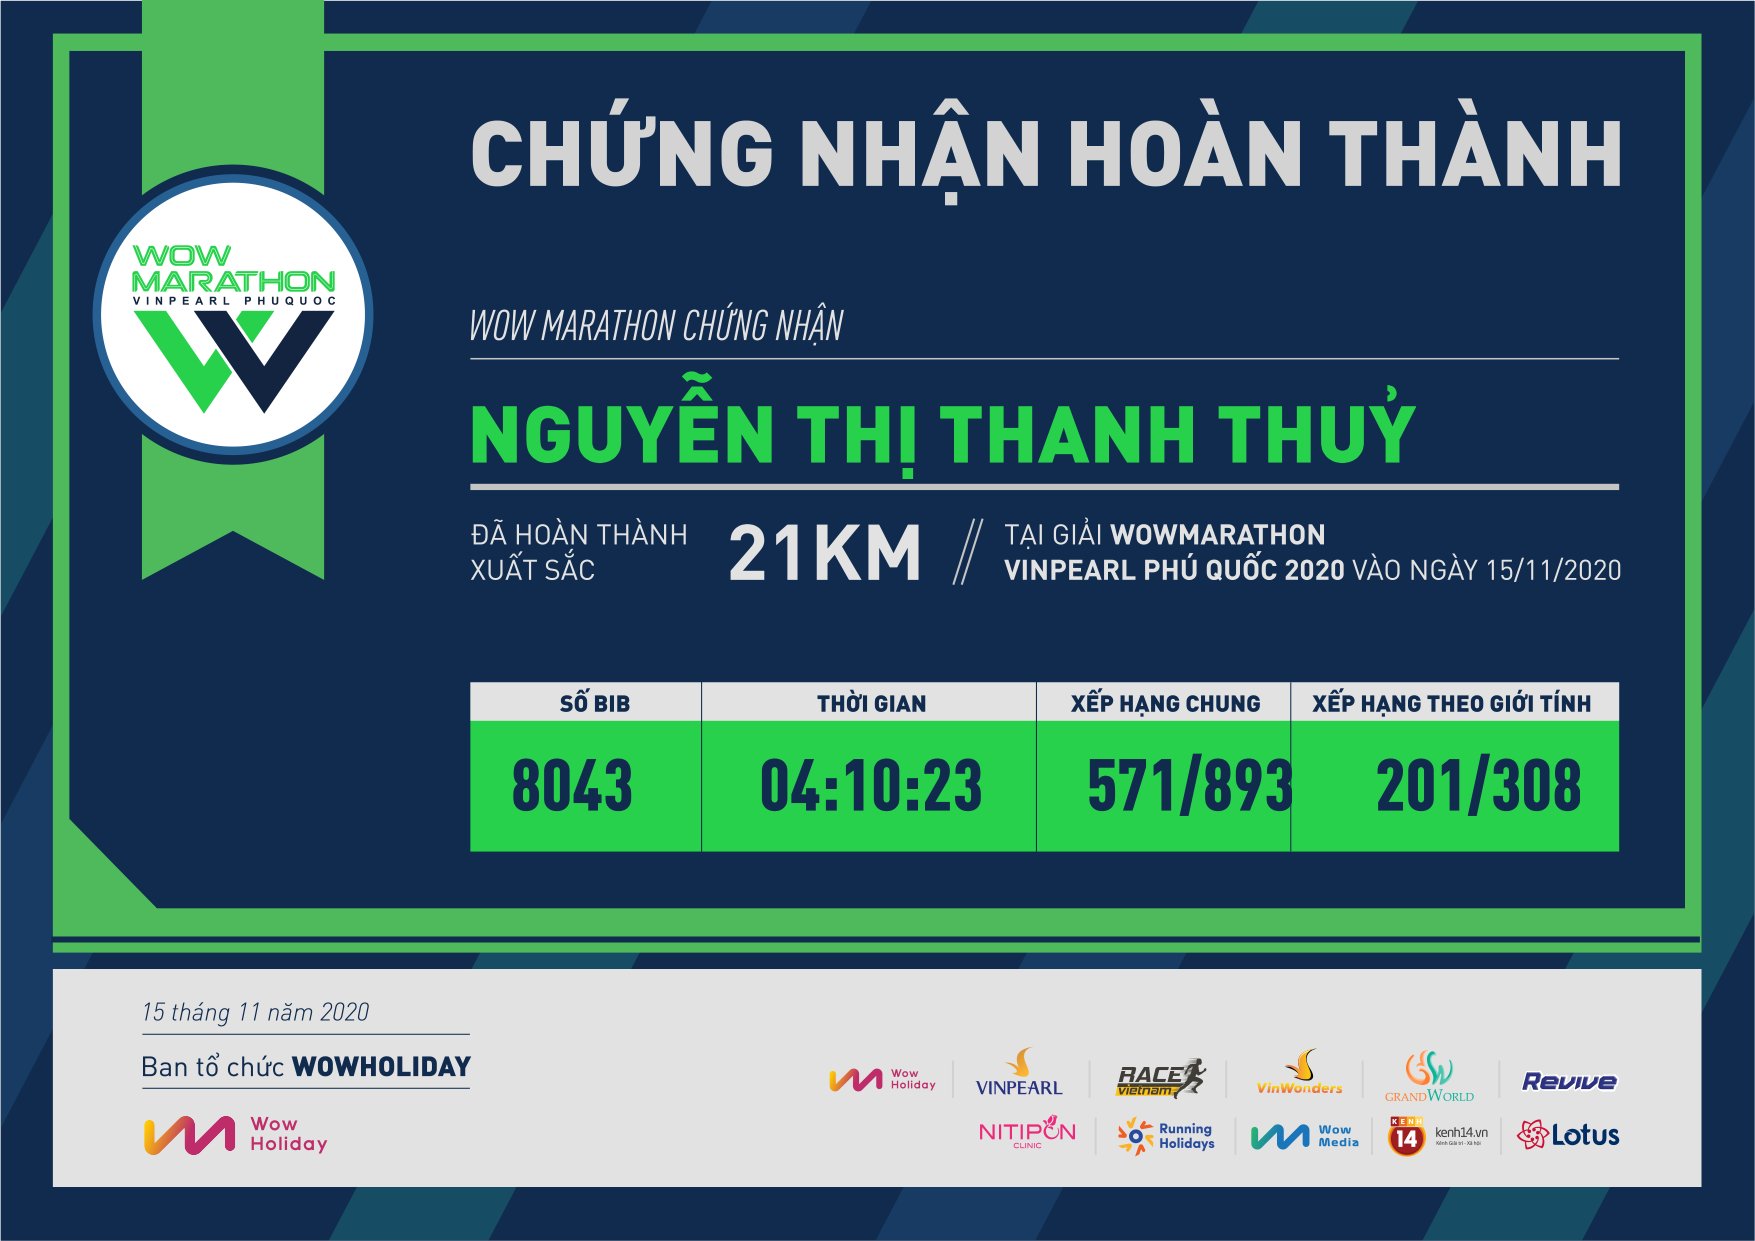 8043 - Nguyễn Thị Thanh Thuỷ